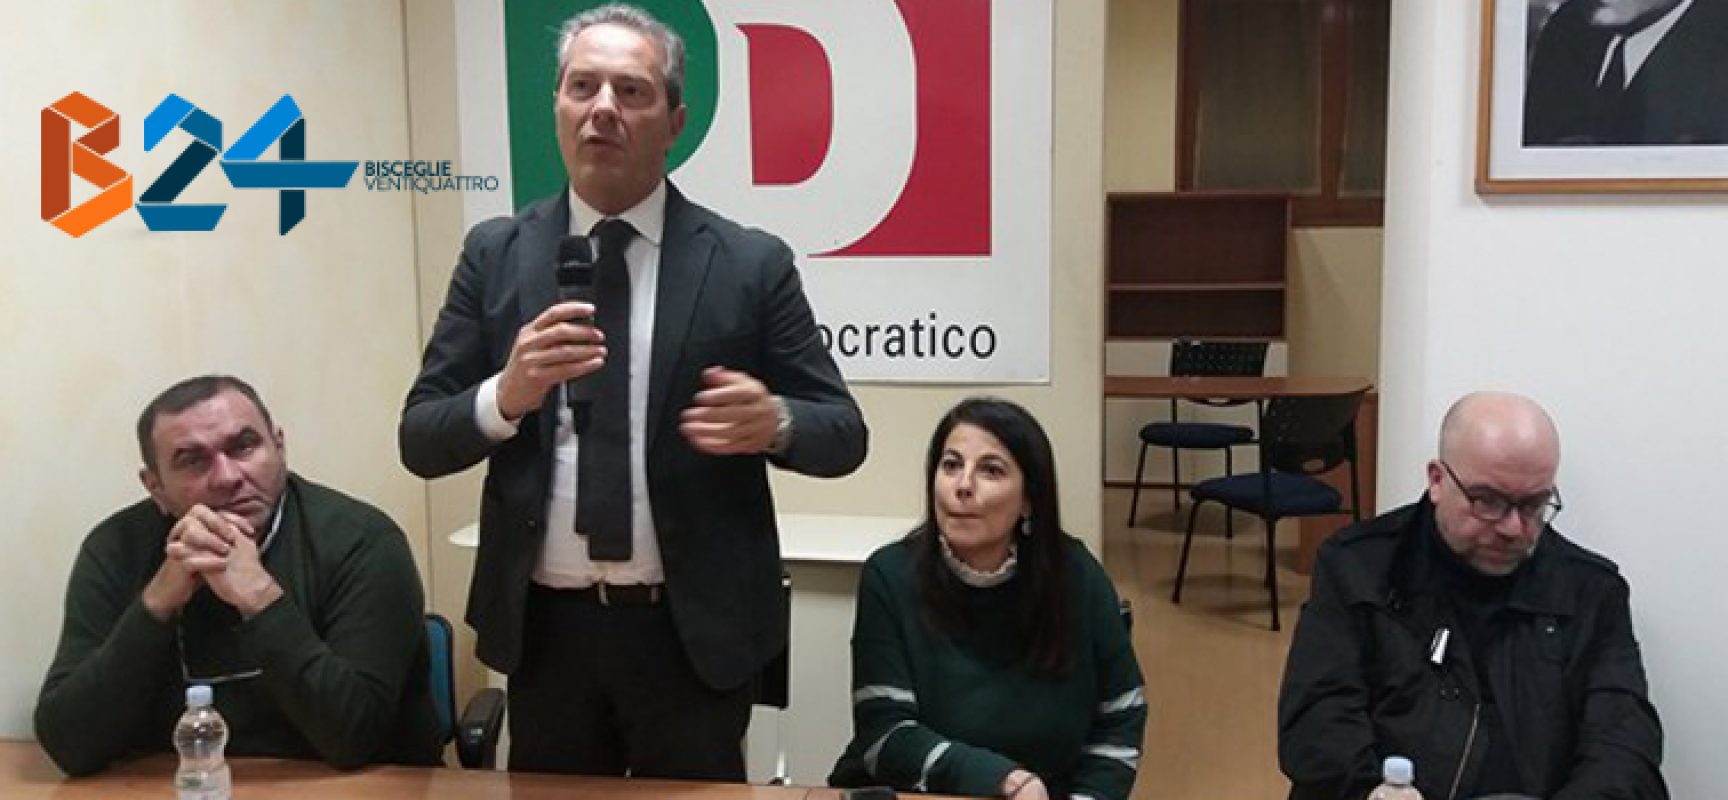 Elezioni 2018, Francesco Spina (Pd): “Nostri candidati sono figli di questa terra”